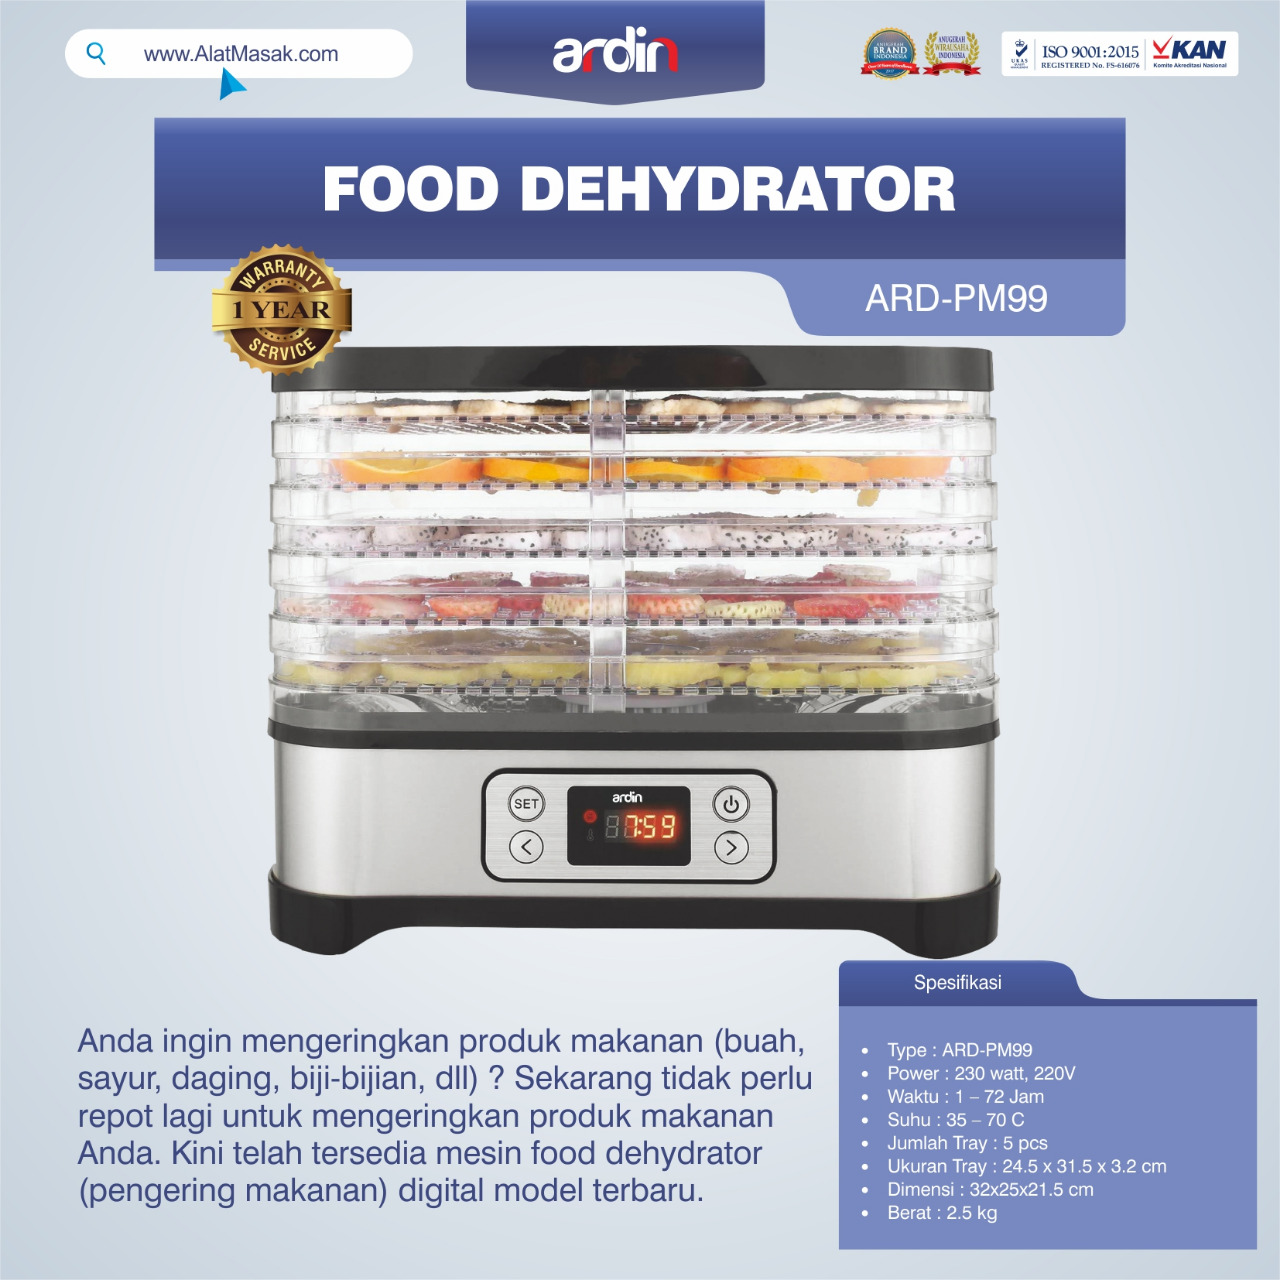 Jual Food Dehydrator ARD-PM99 di Bali